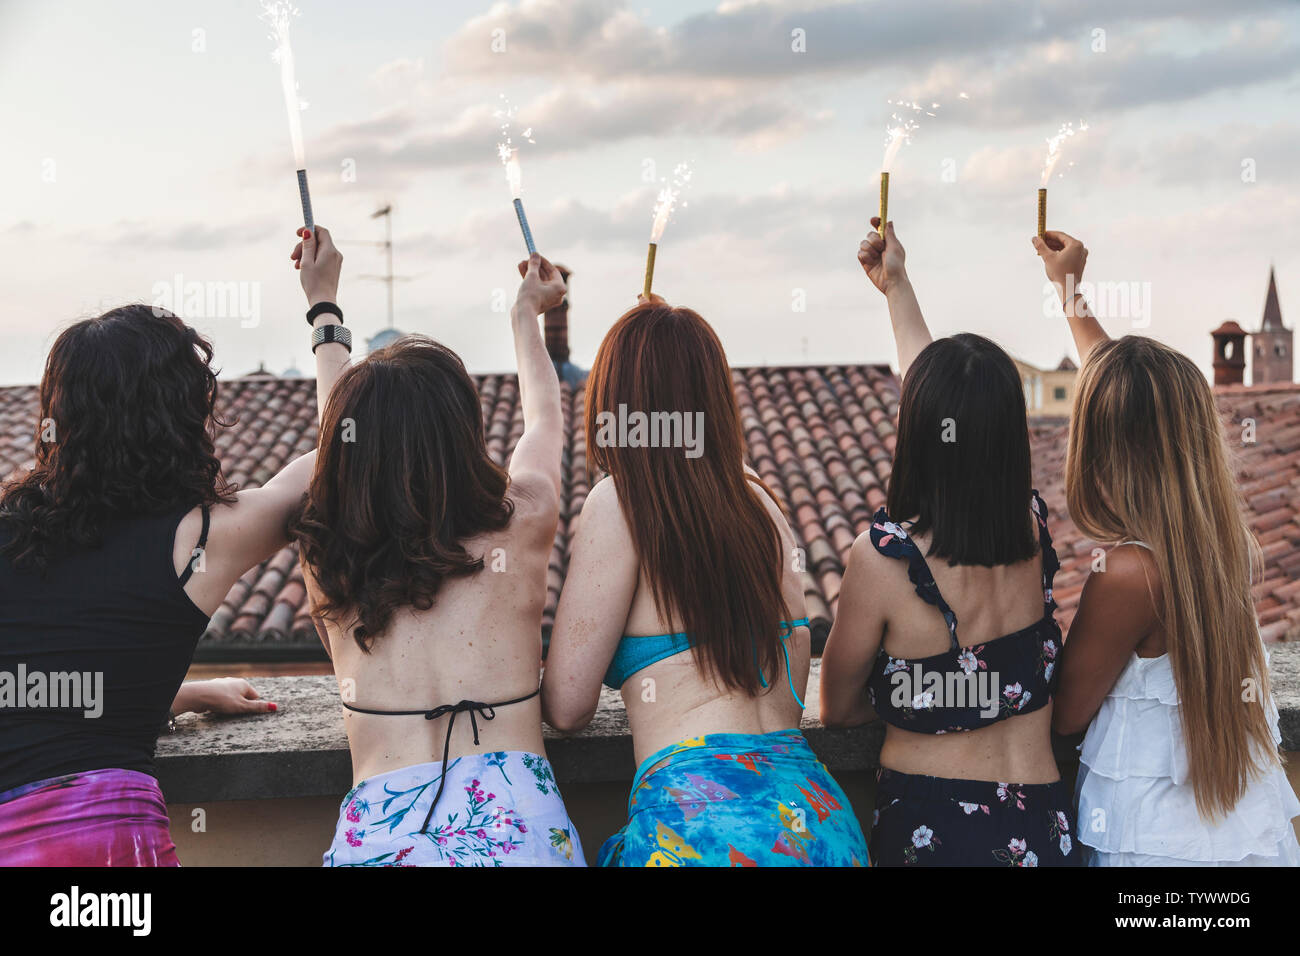 Groupe de professionnels amis féminins habillés en maillot de bain et paréo holding sparklers at rooftop party Banque D'Images